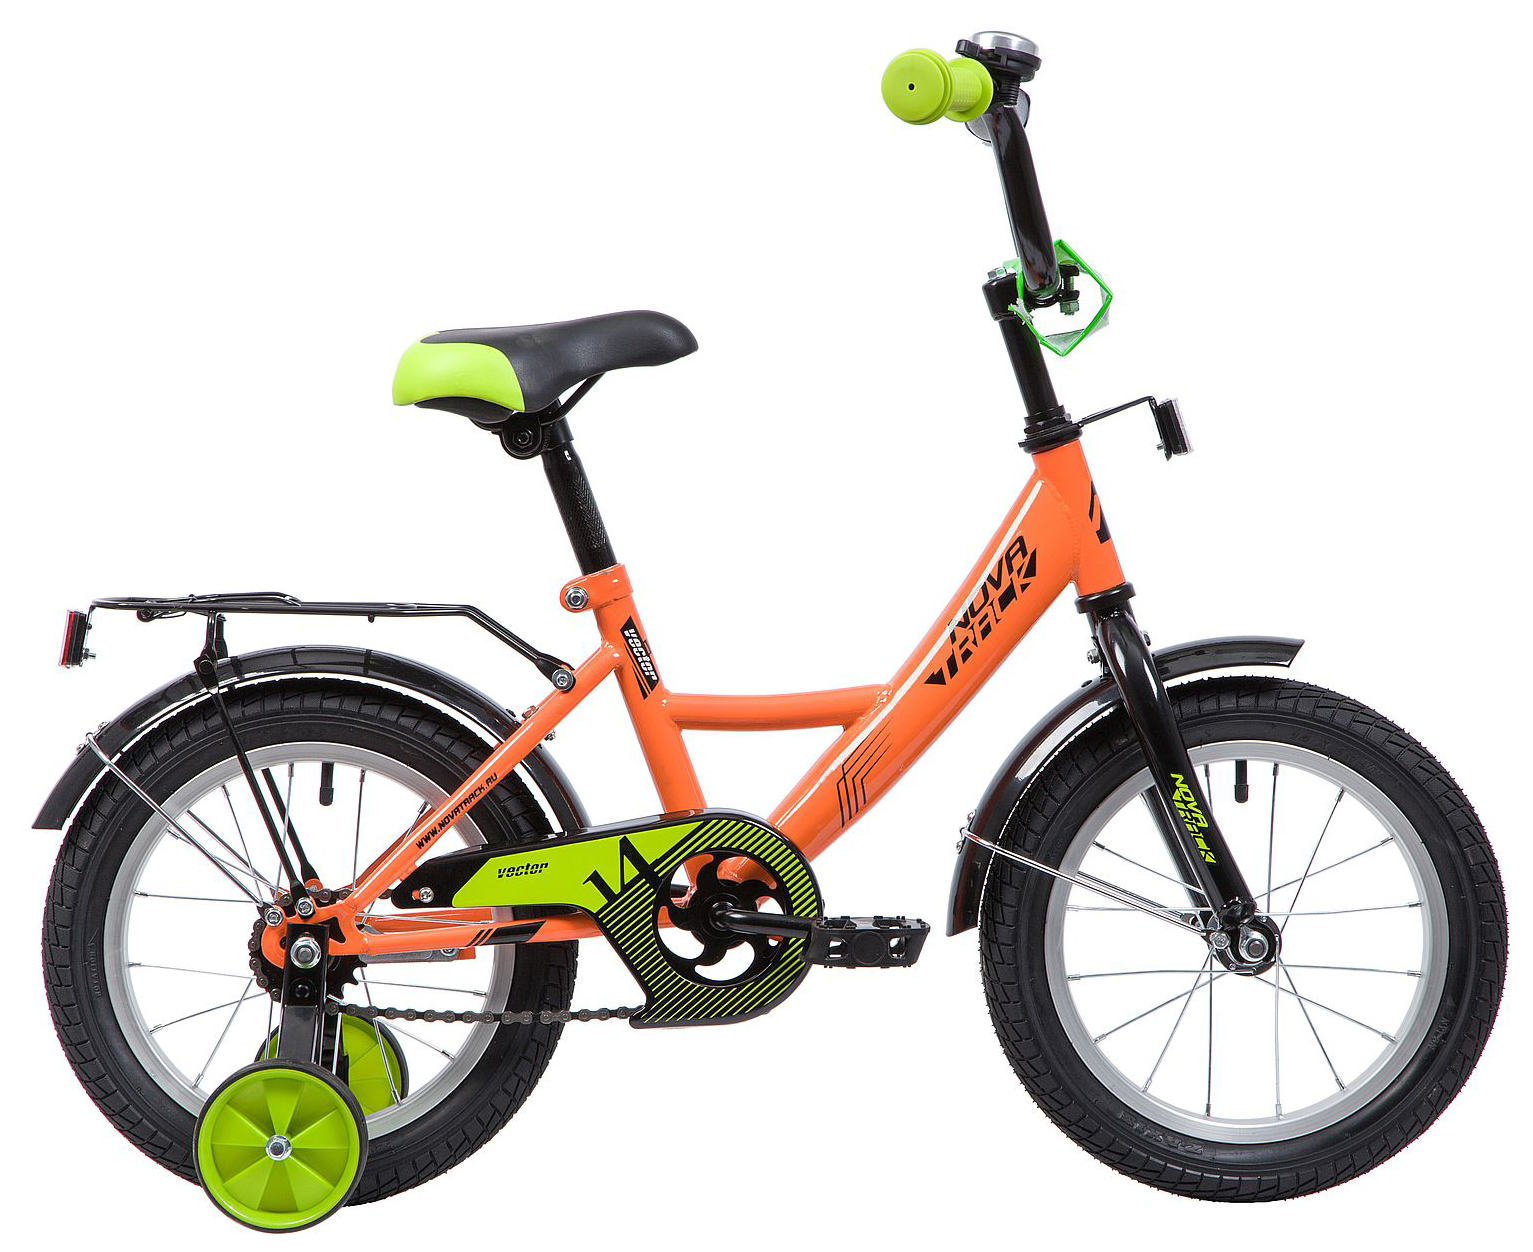  Отзывы о Детском велосипеде Novatrack Vector 14 2019